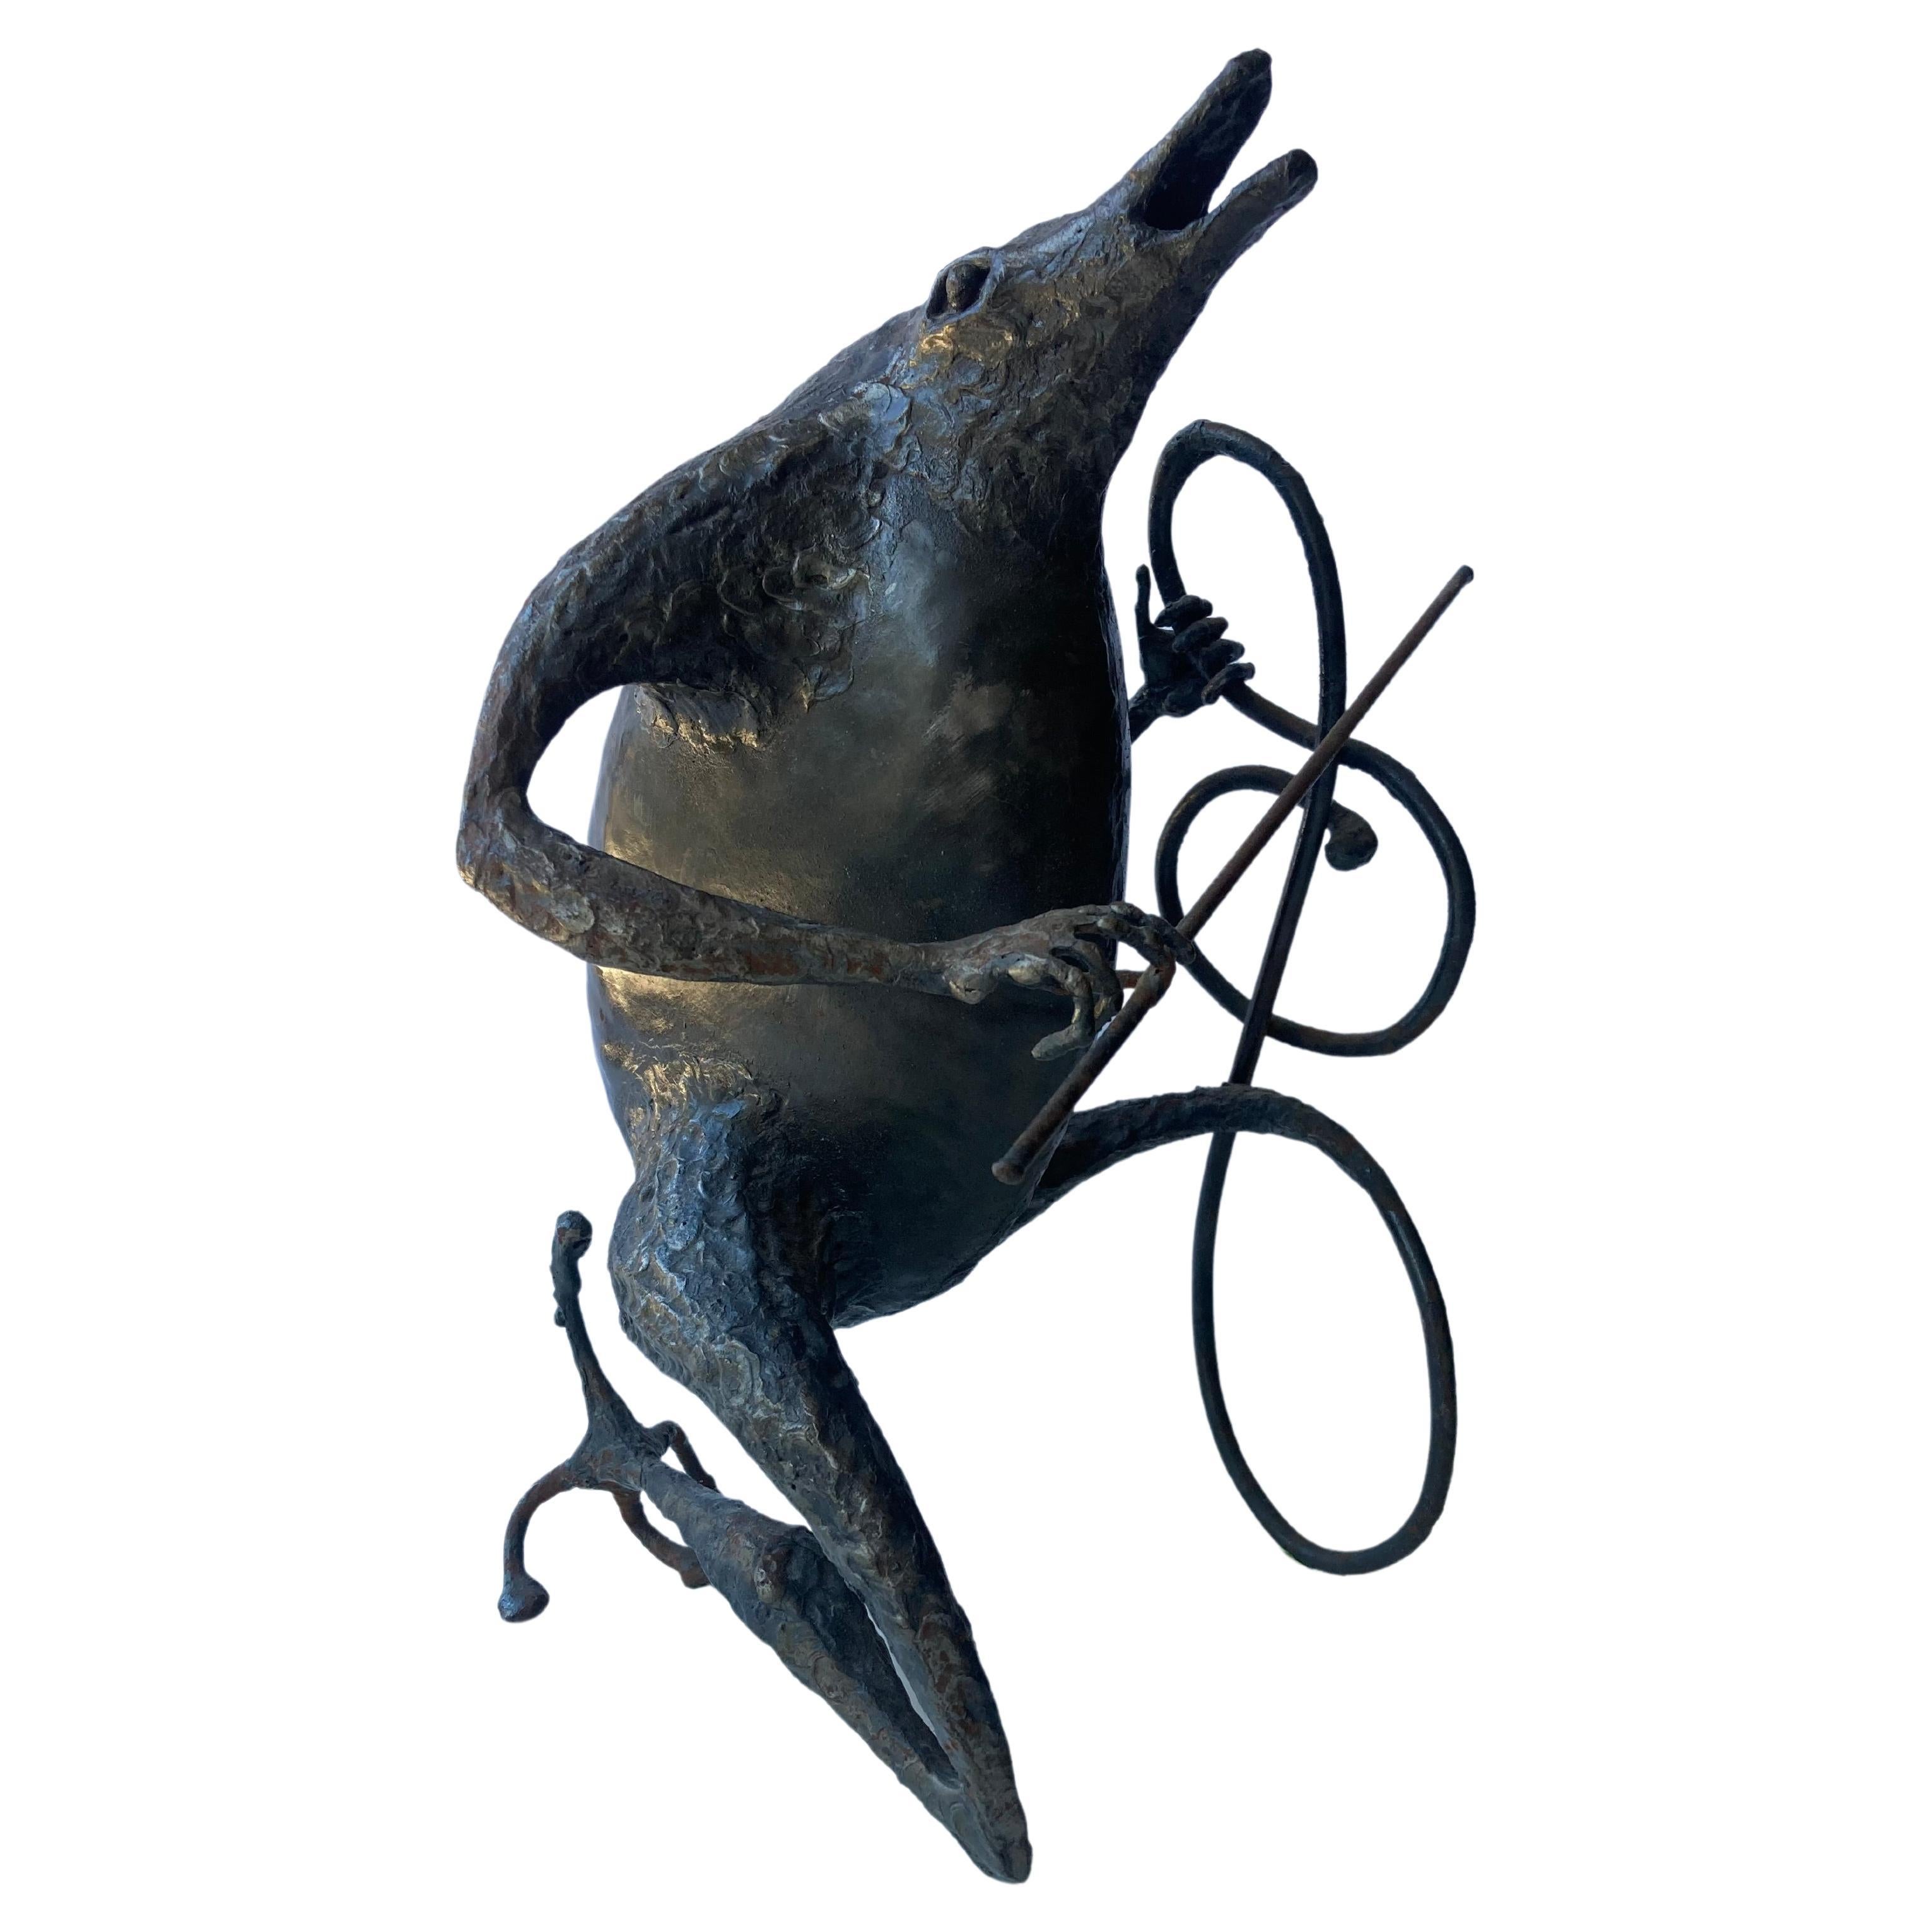 Sculpture « Musician » de Michel Anasse, surréaliste brutaliste surréaliste en métal abstrait